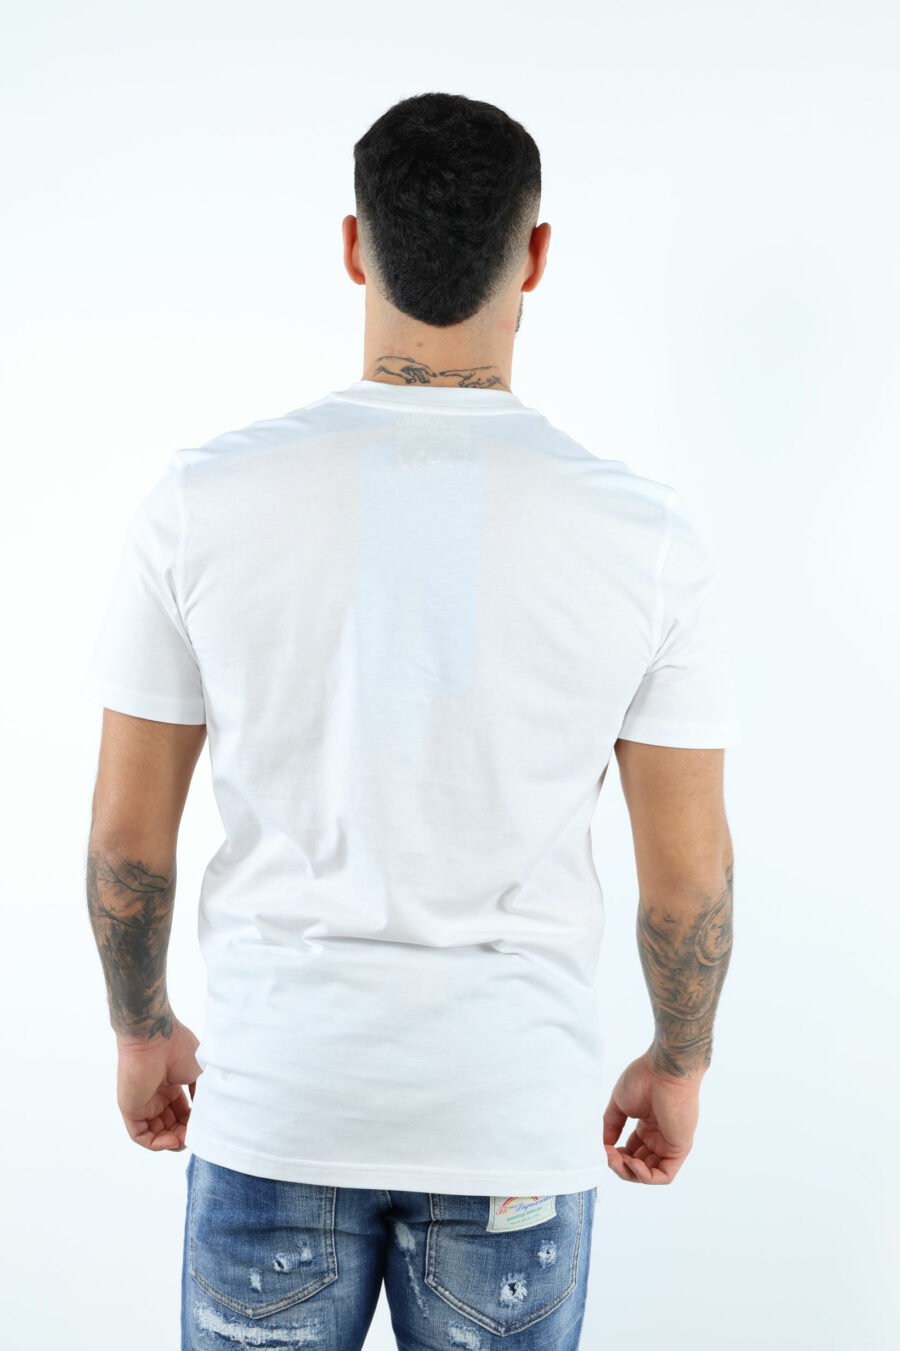 Camiseta blanca con minilogo oso en puntos monocromático - 106665